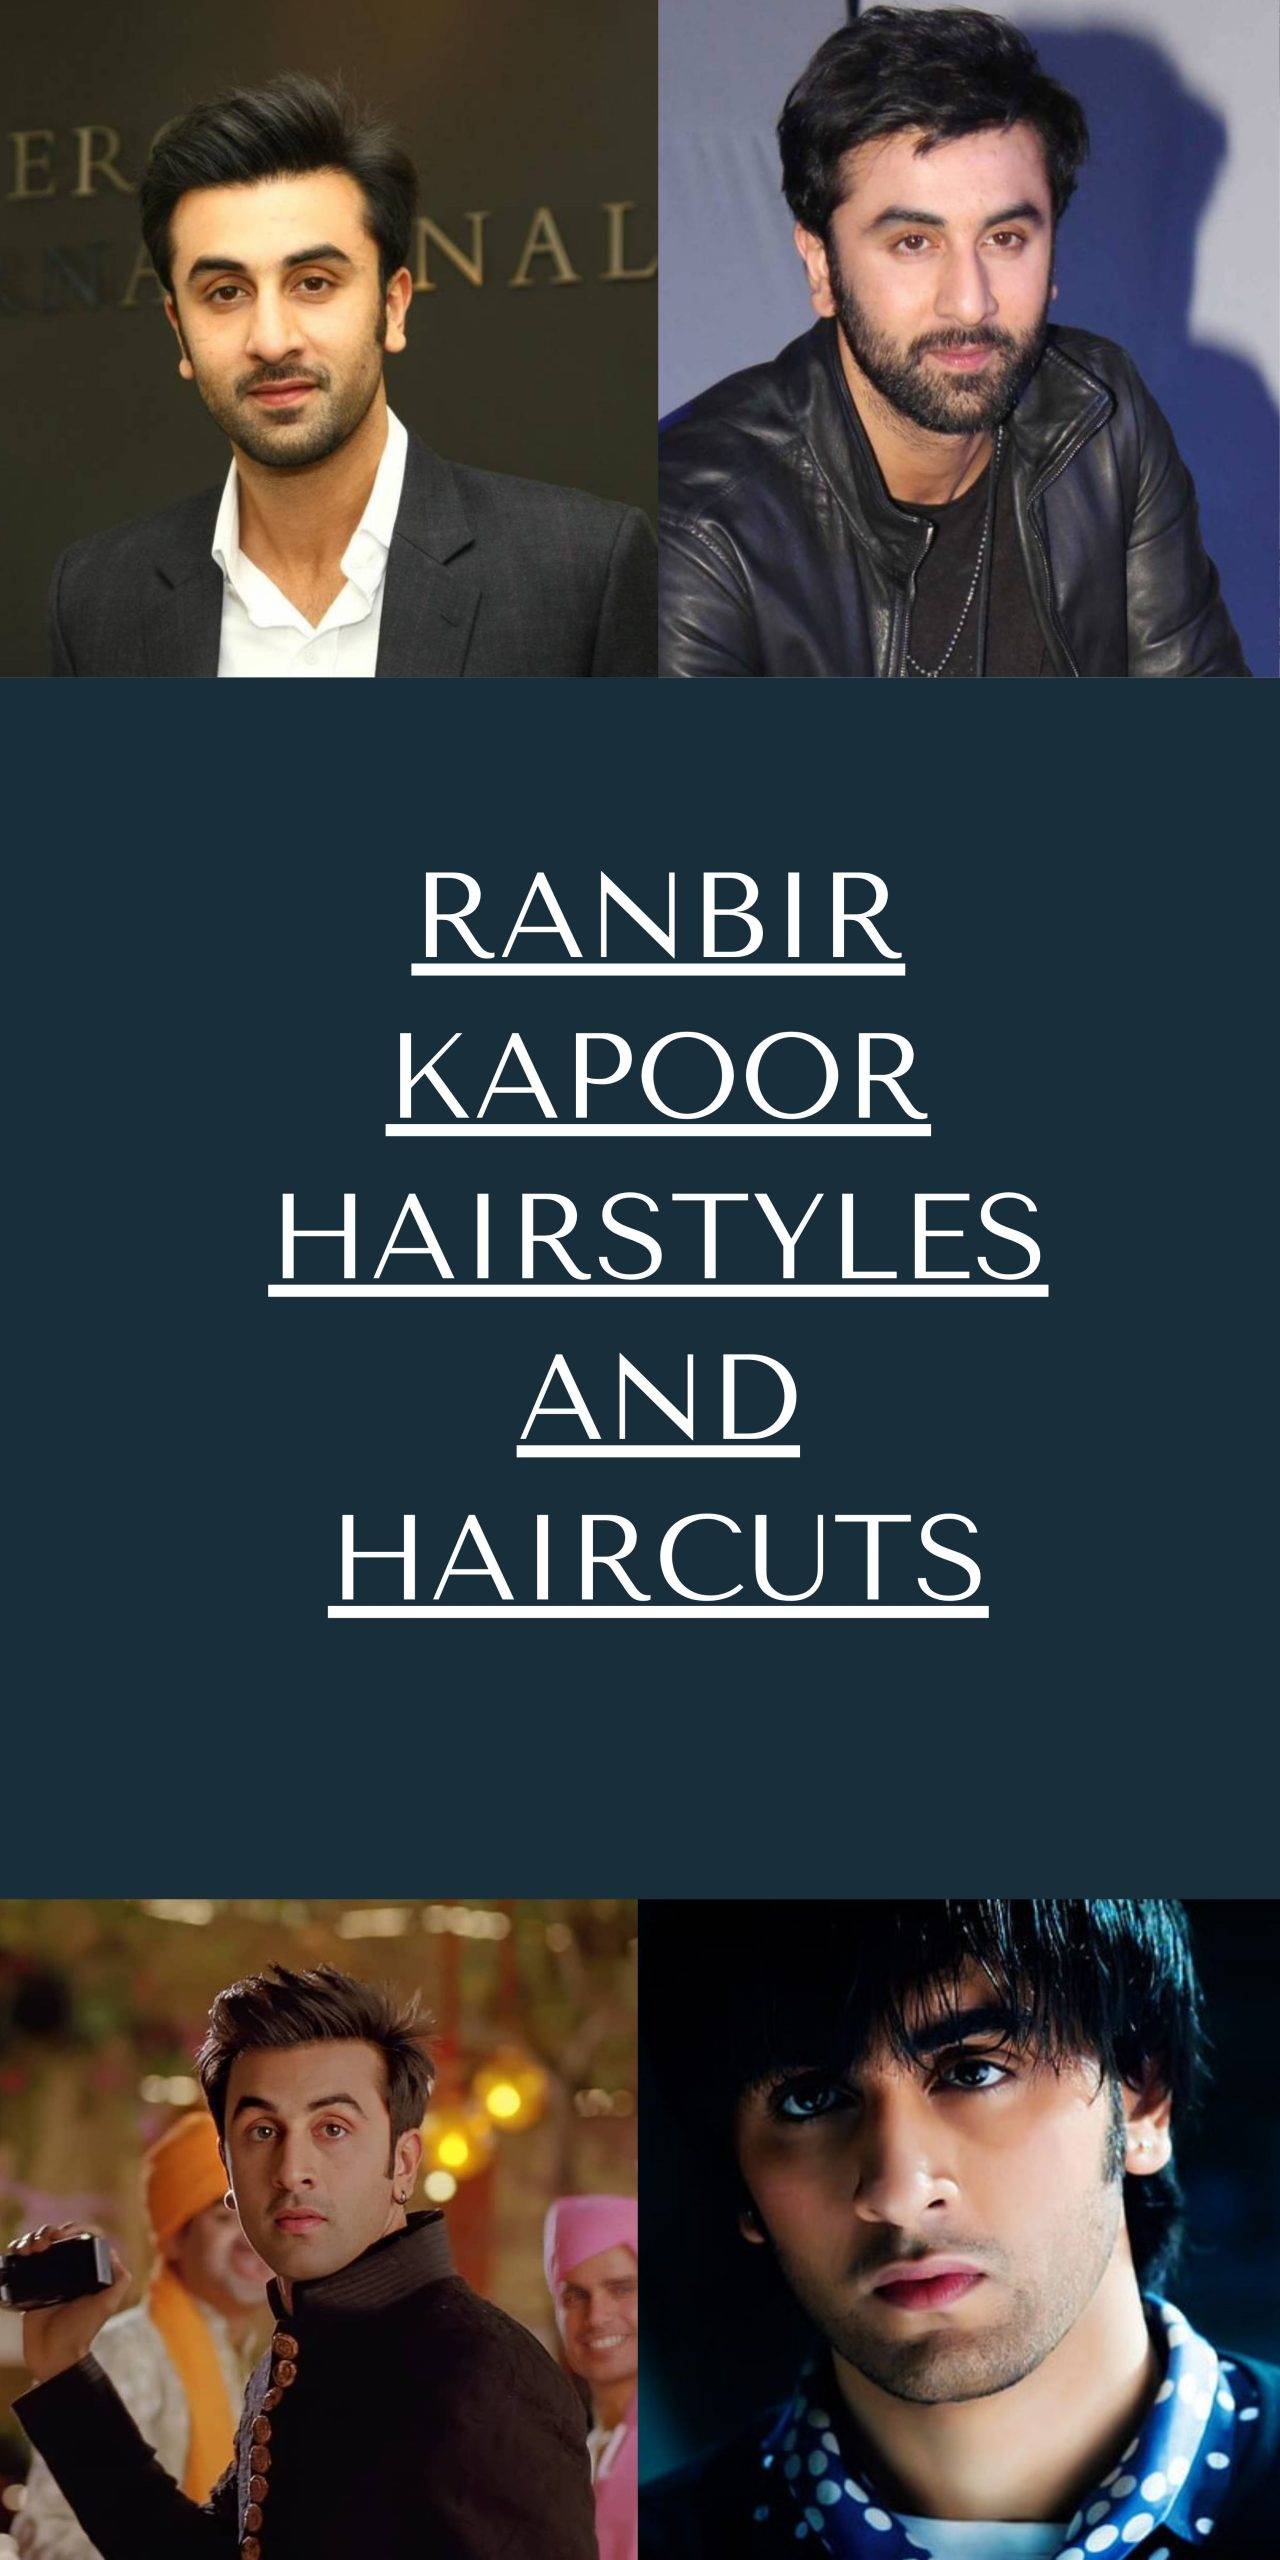 Ranbir Kapoor Hairstyles and Haircuts